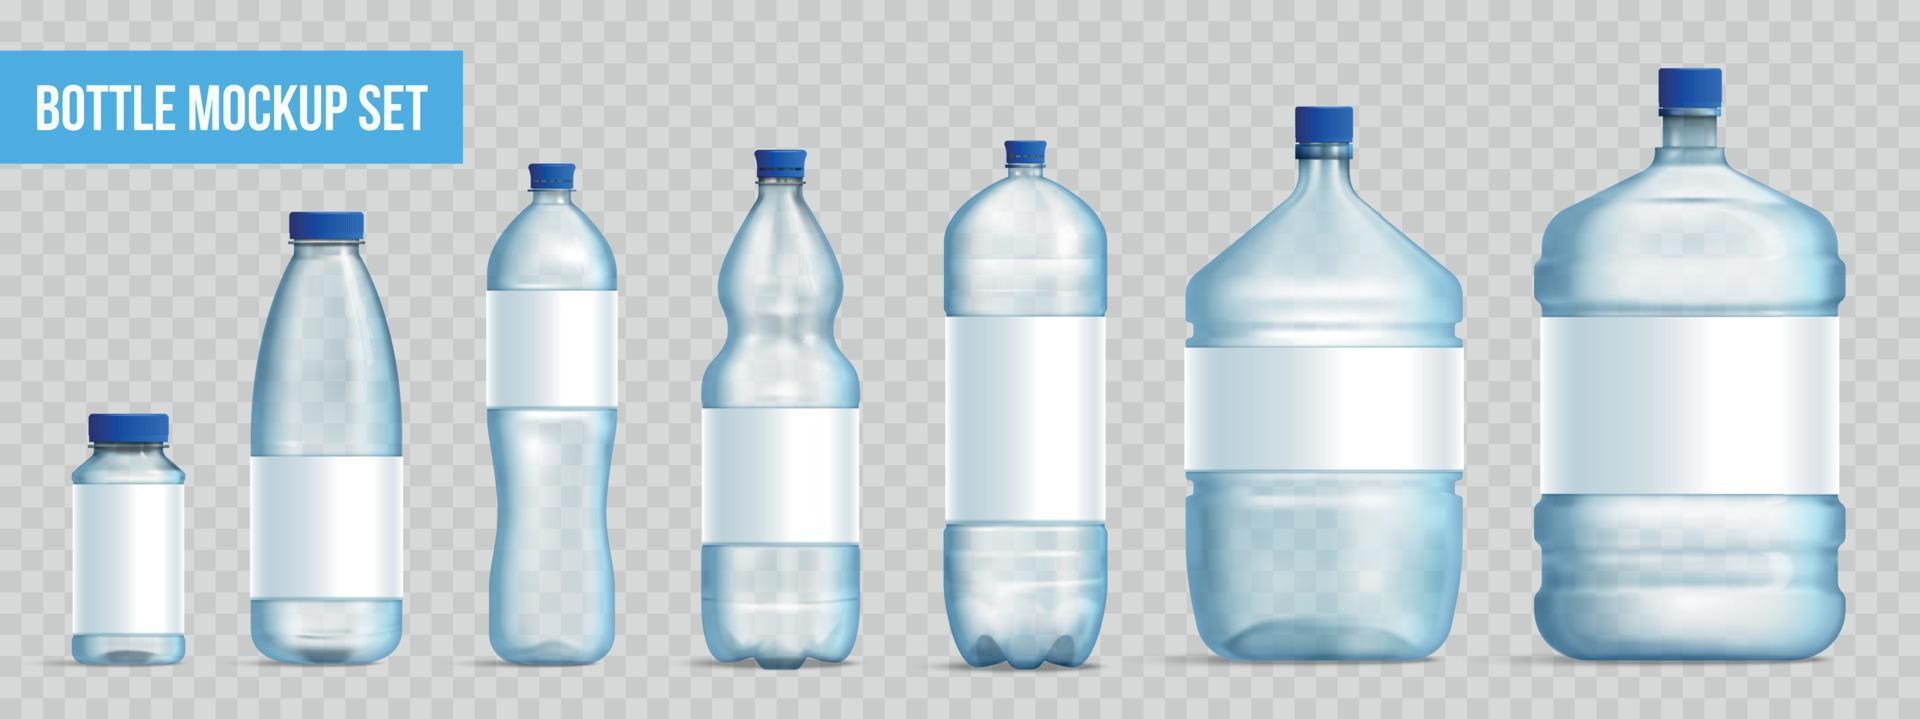 conjunto realista de maqueta de botella de plástico vector